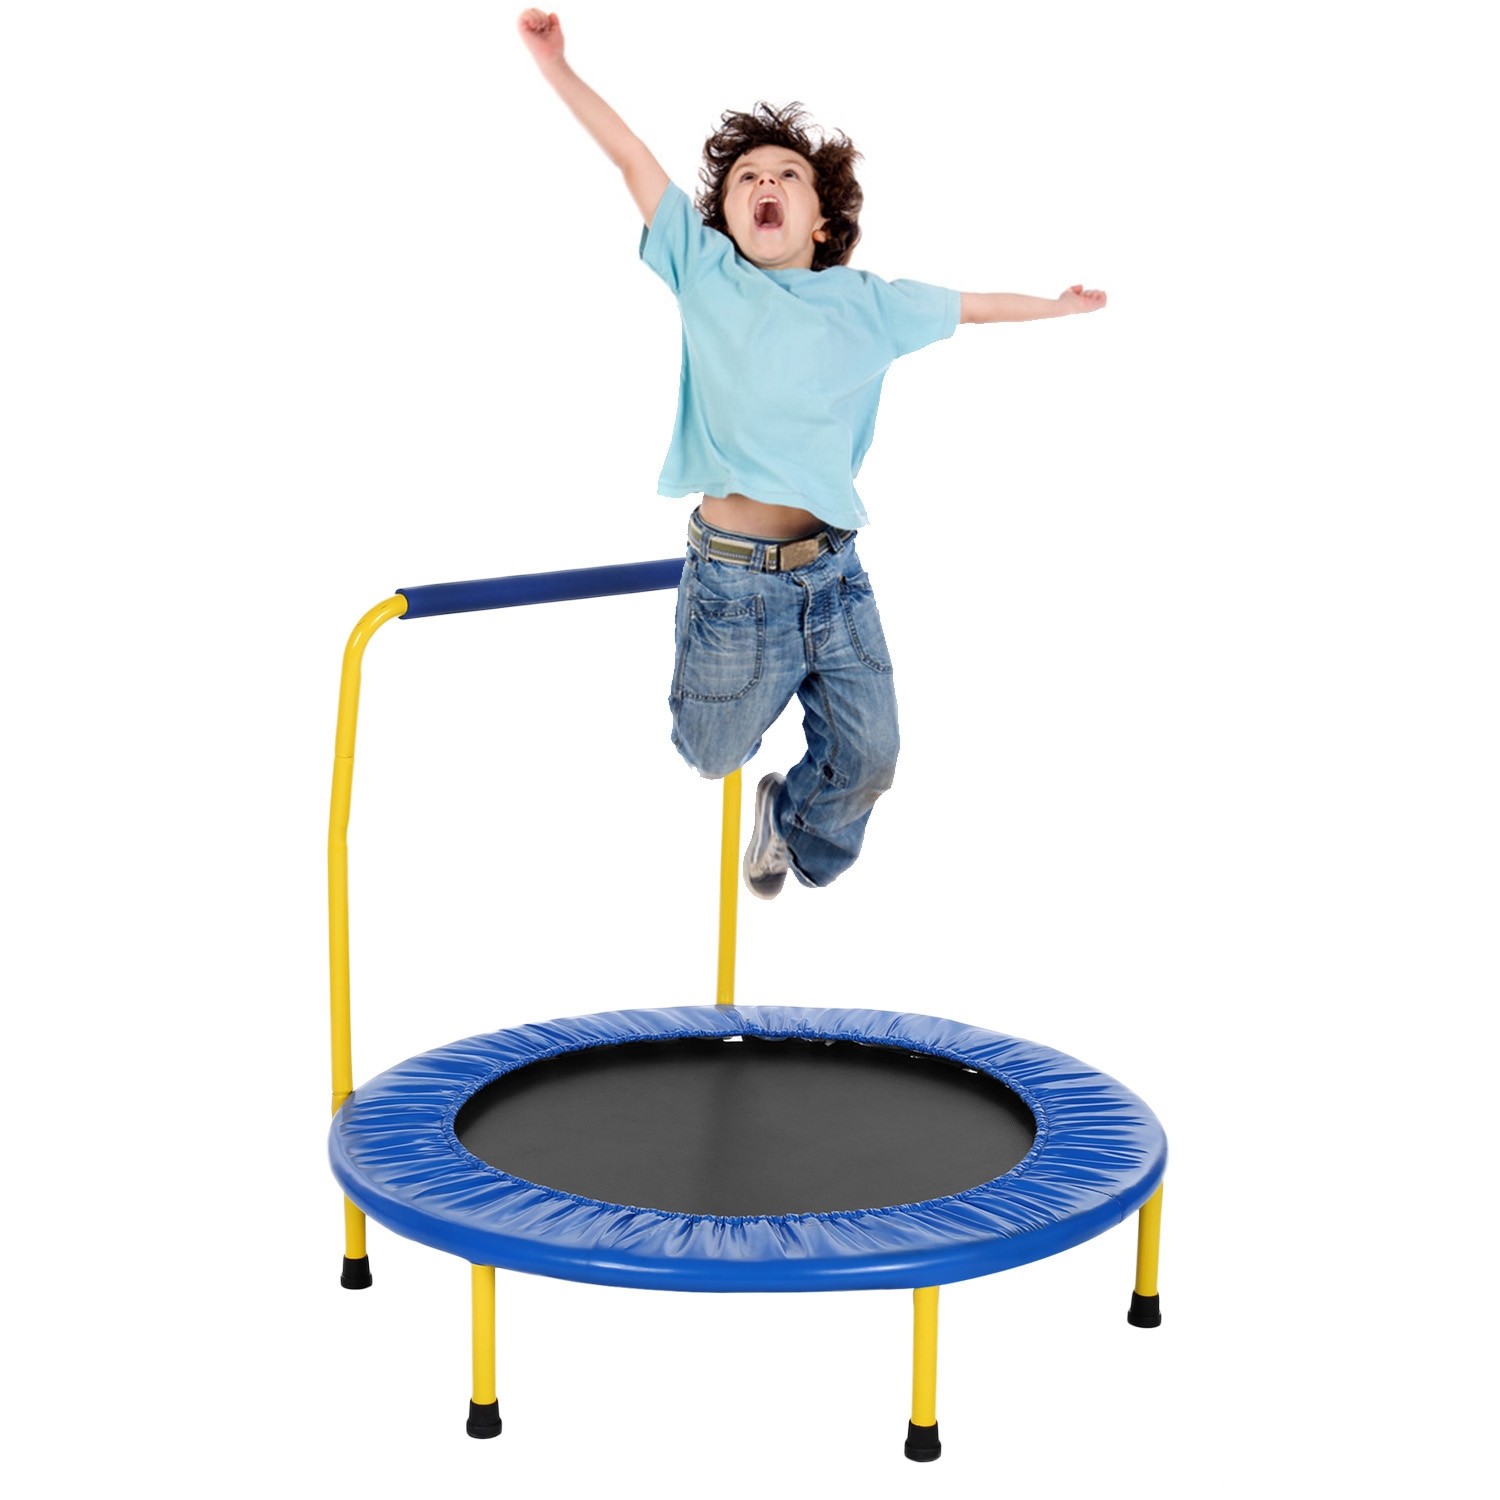 Comment choisir la bonne taille de trampoline pour votre enfant ?